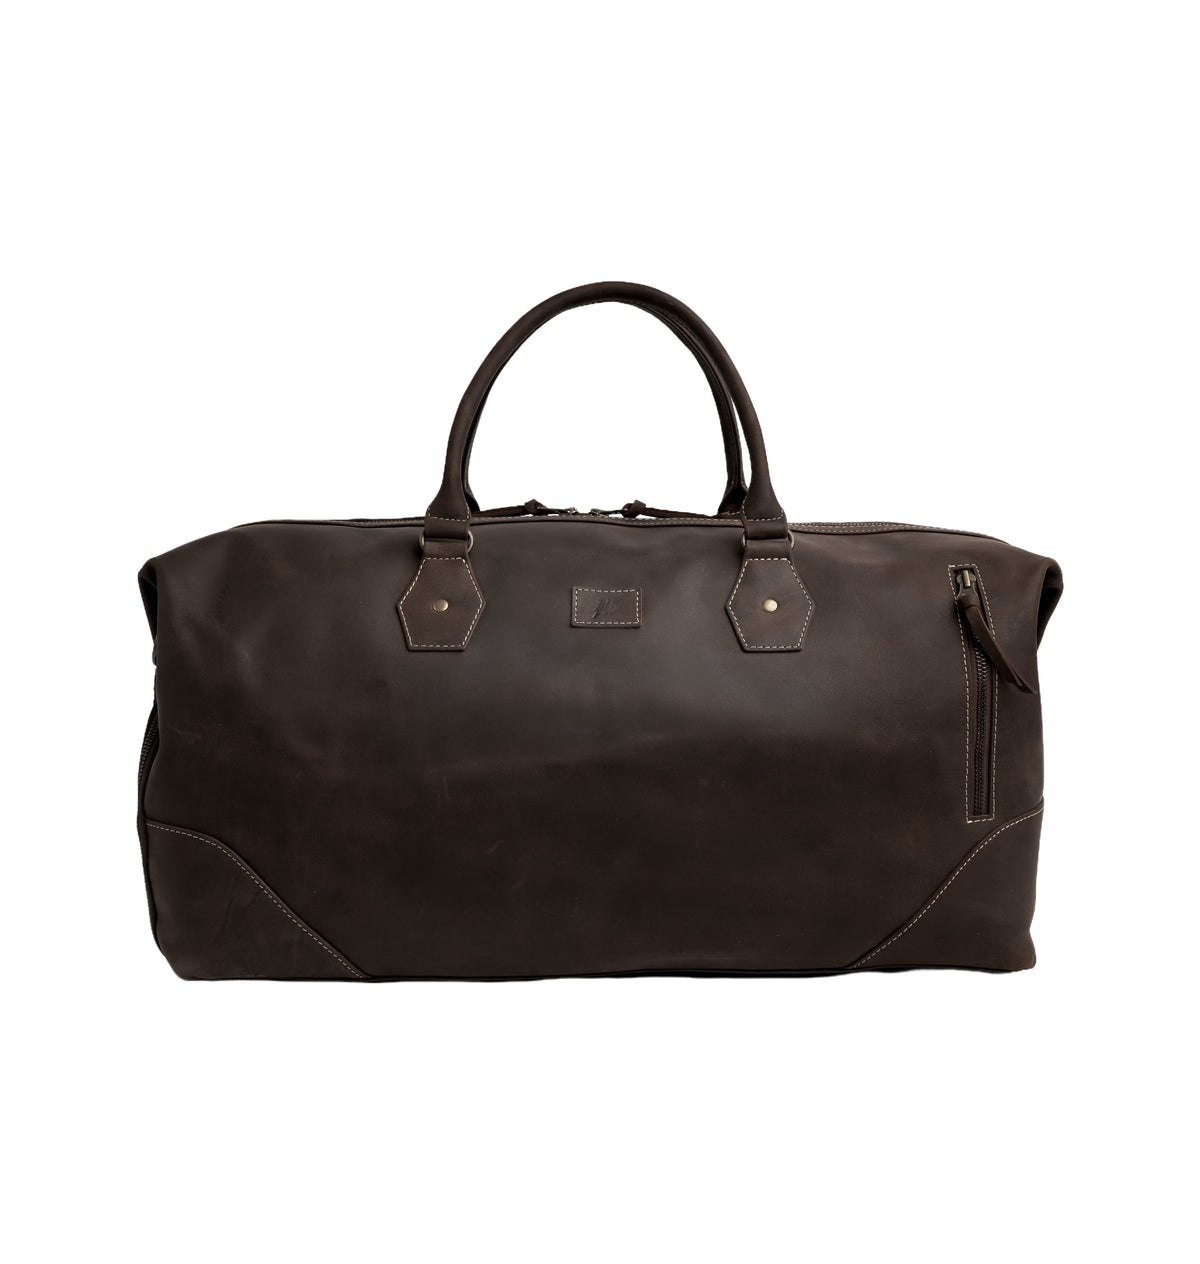 The Weekender Travel Leather Duffle Bag-Dark Brown